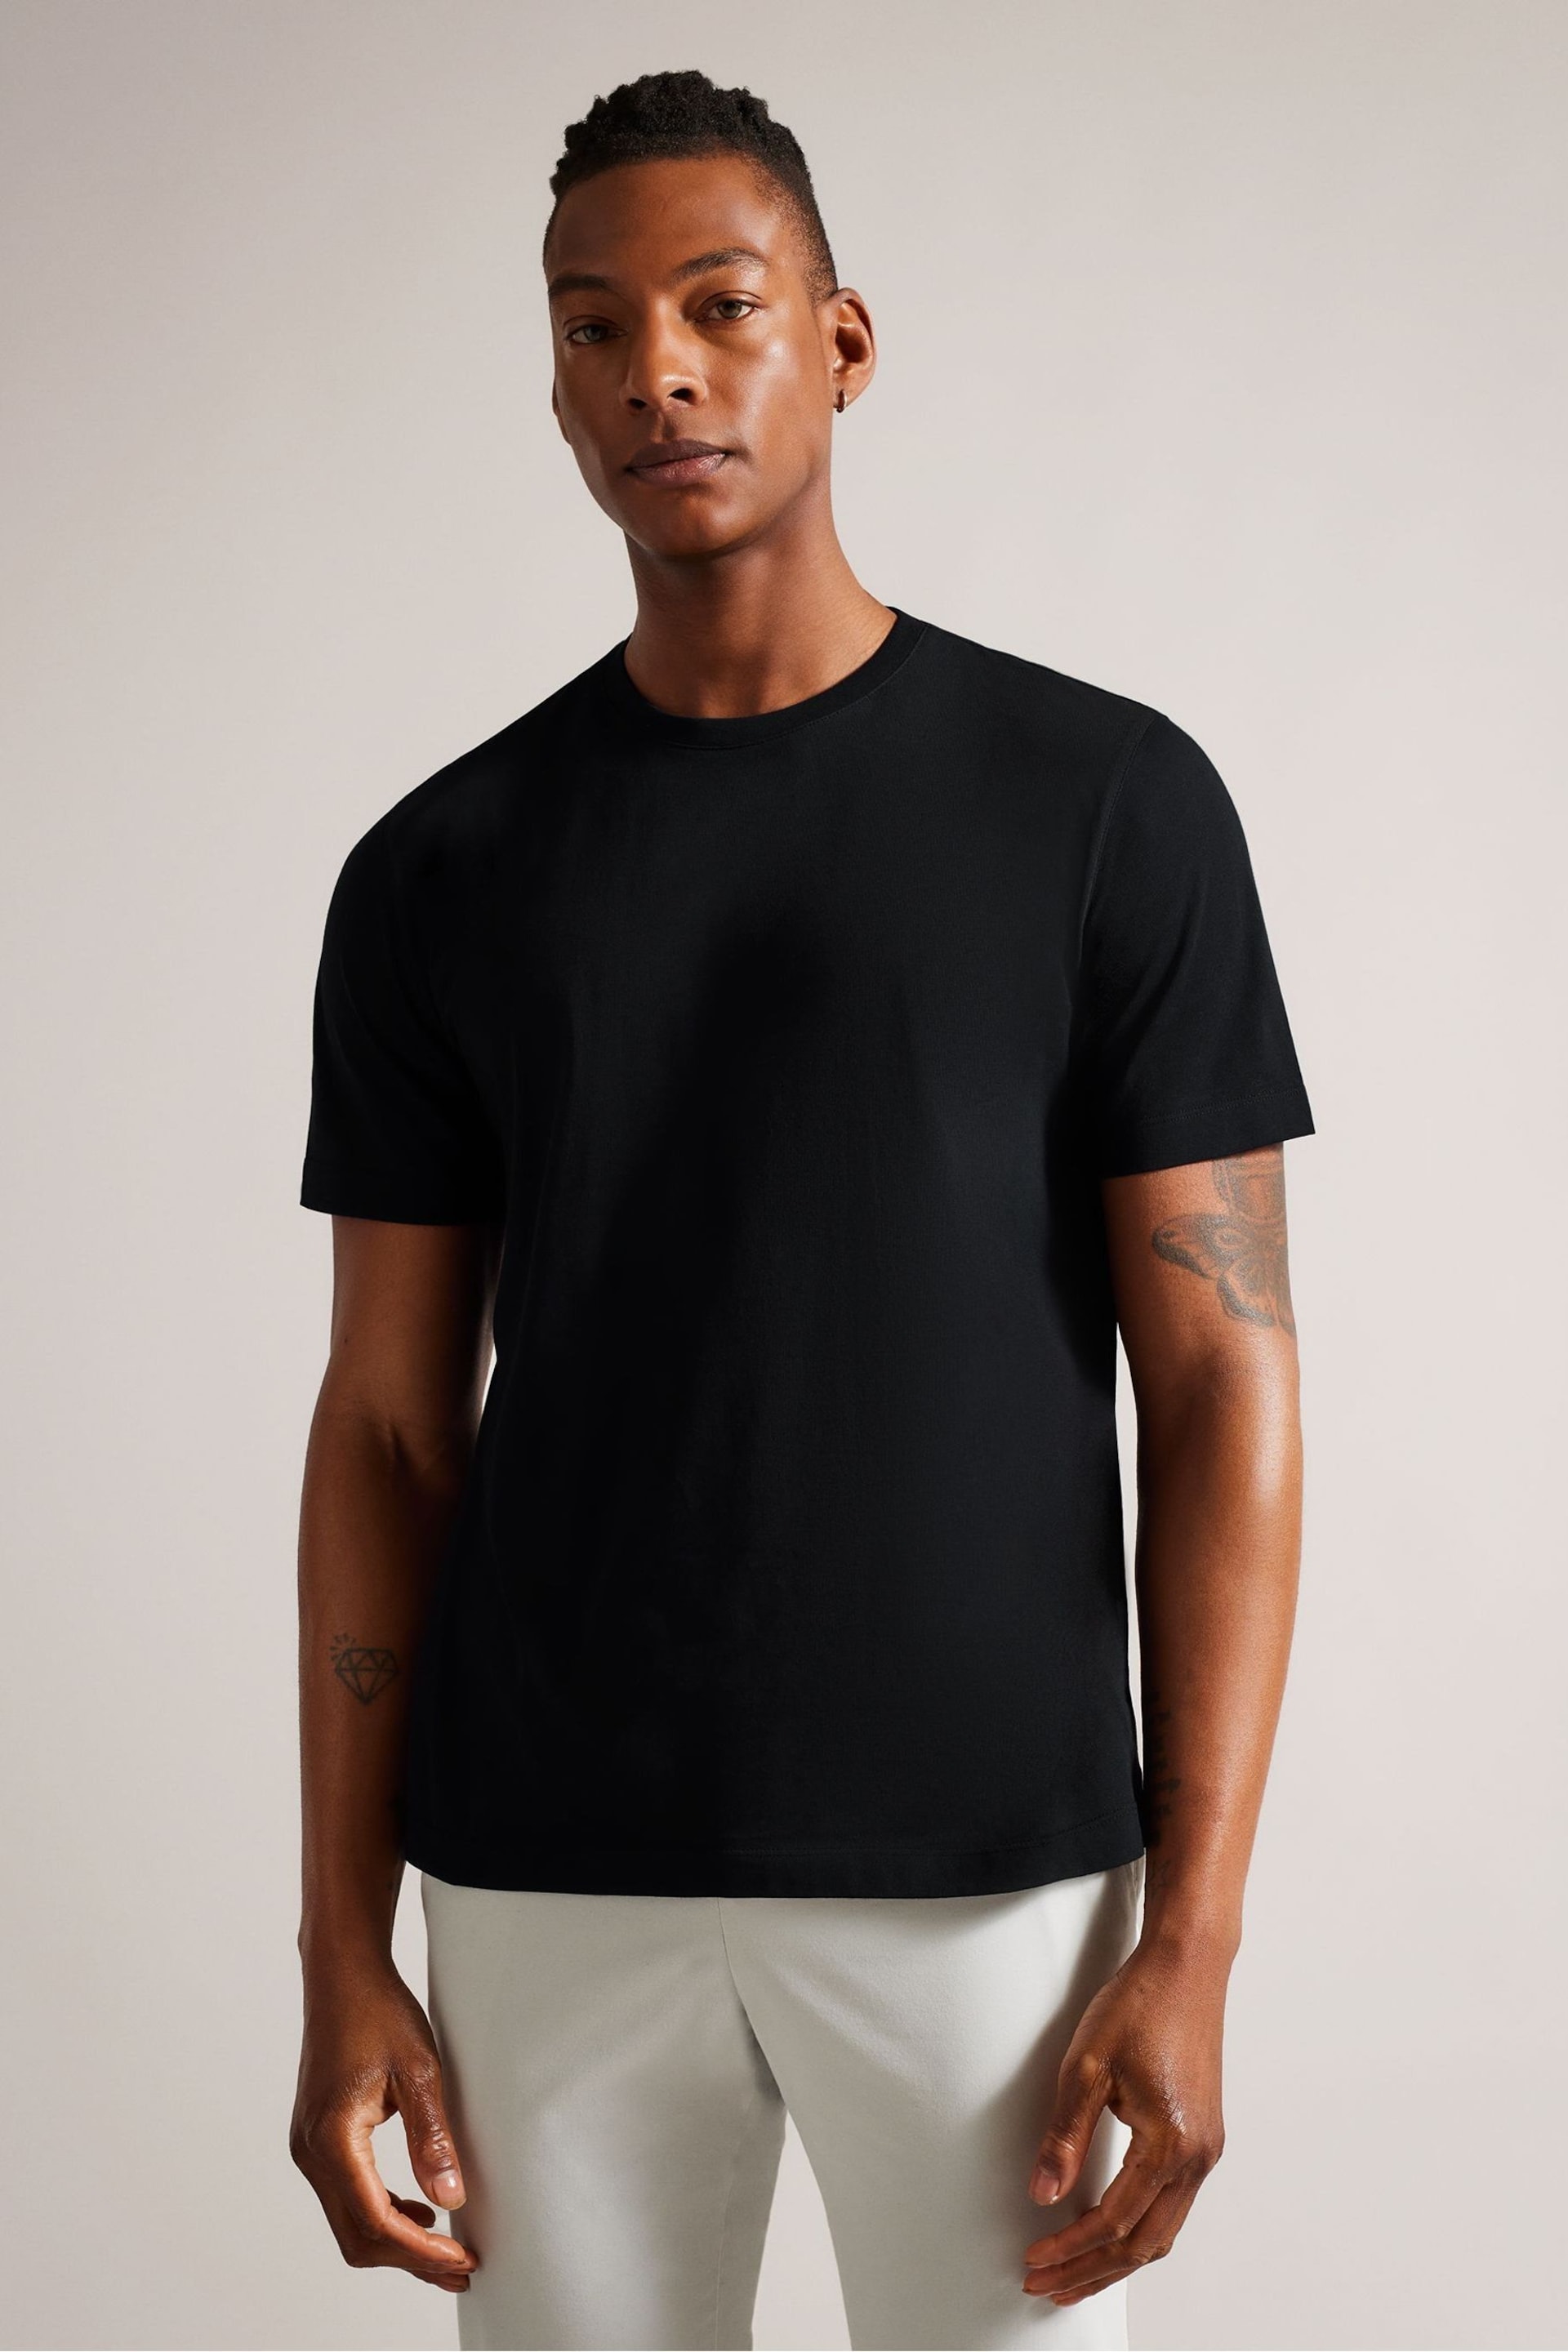 Ted Baker Black Tywinn Regular Plain T-Shirt - Image 1 of 5